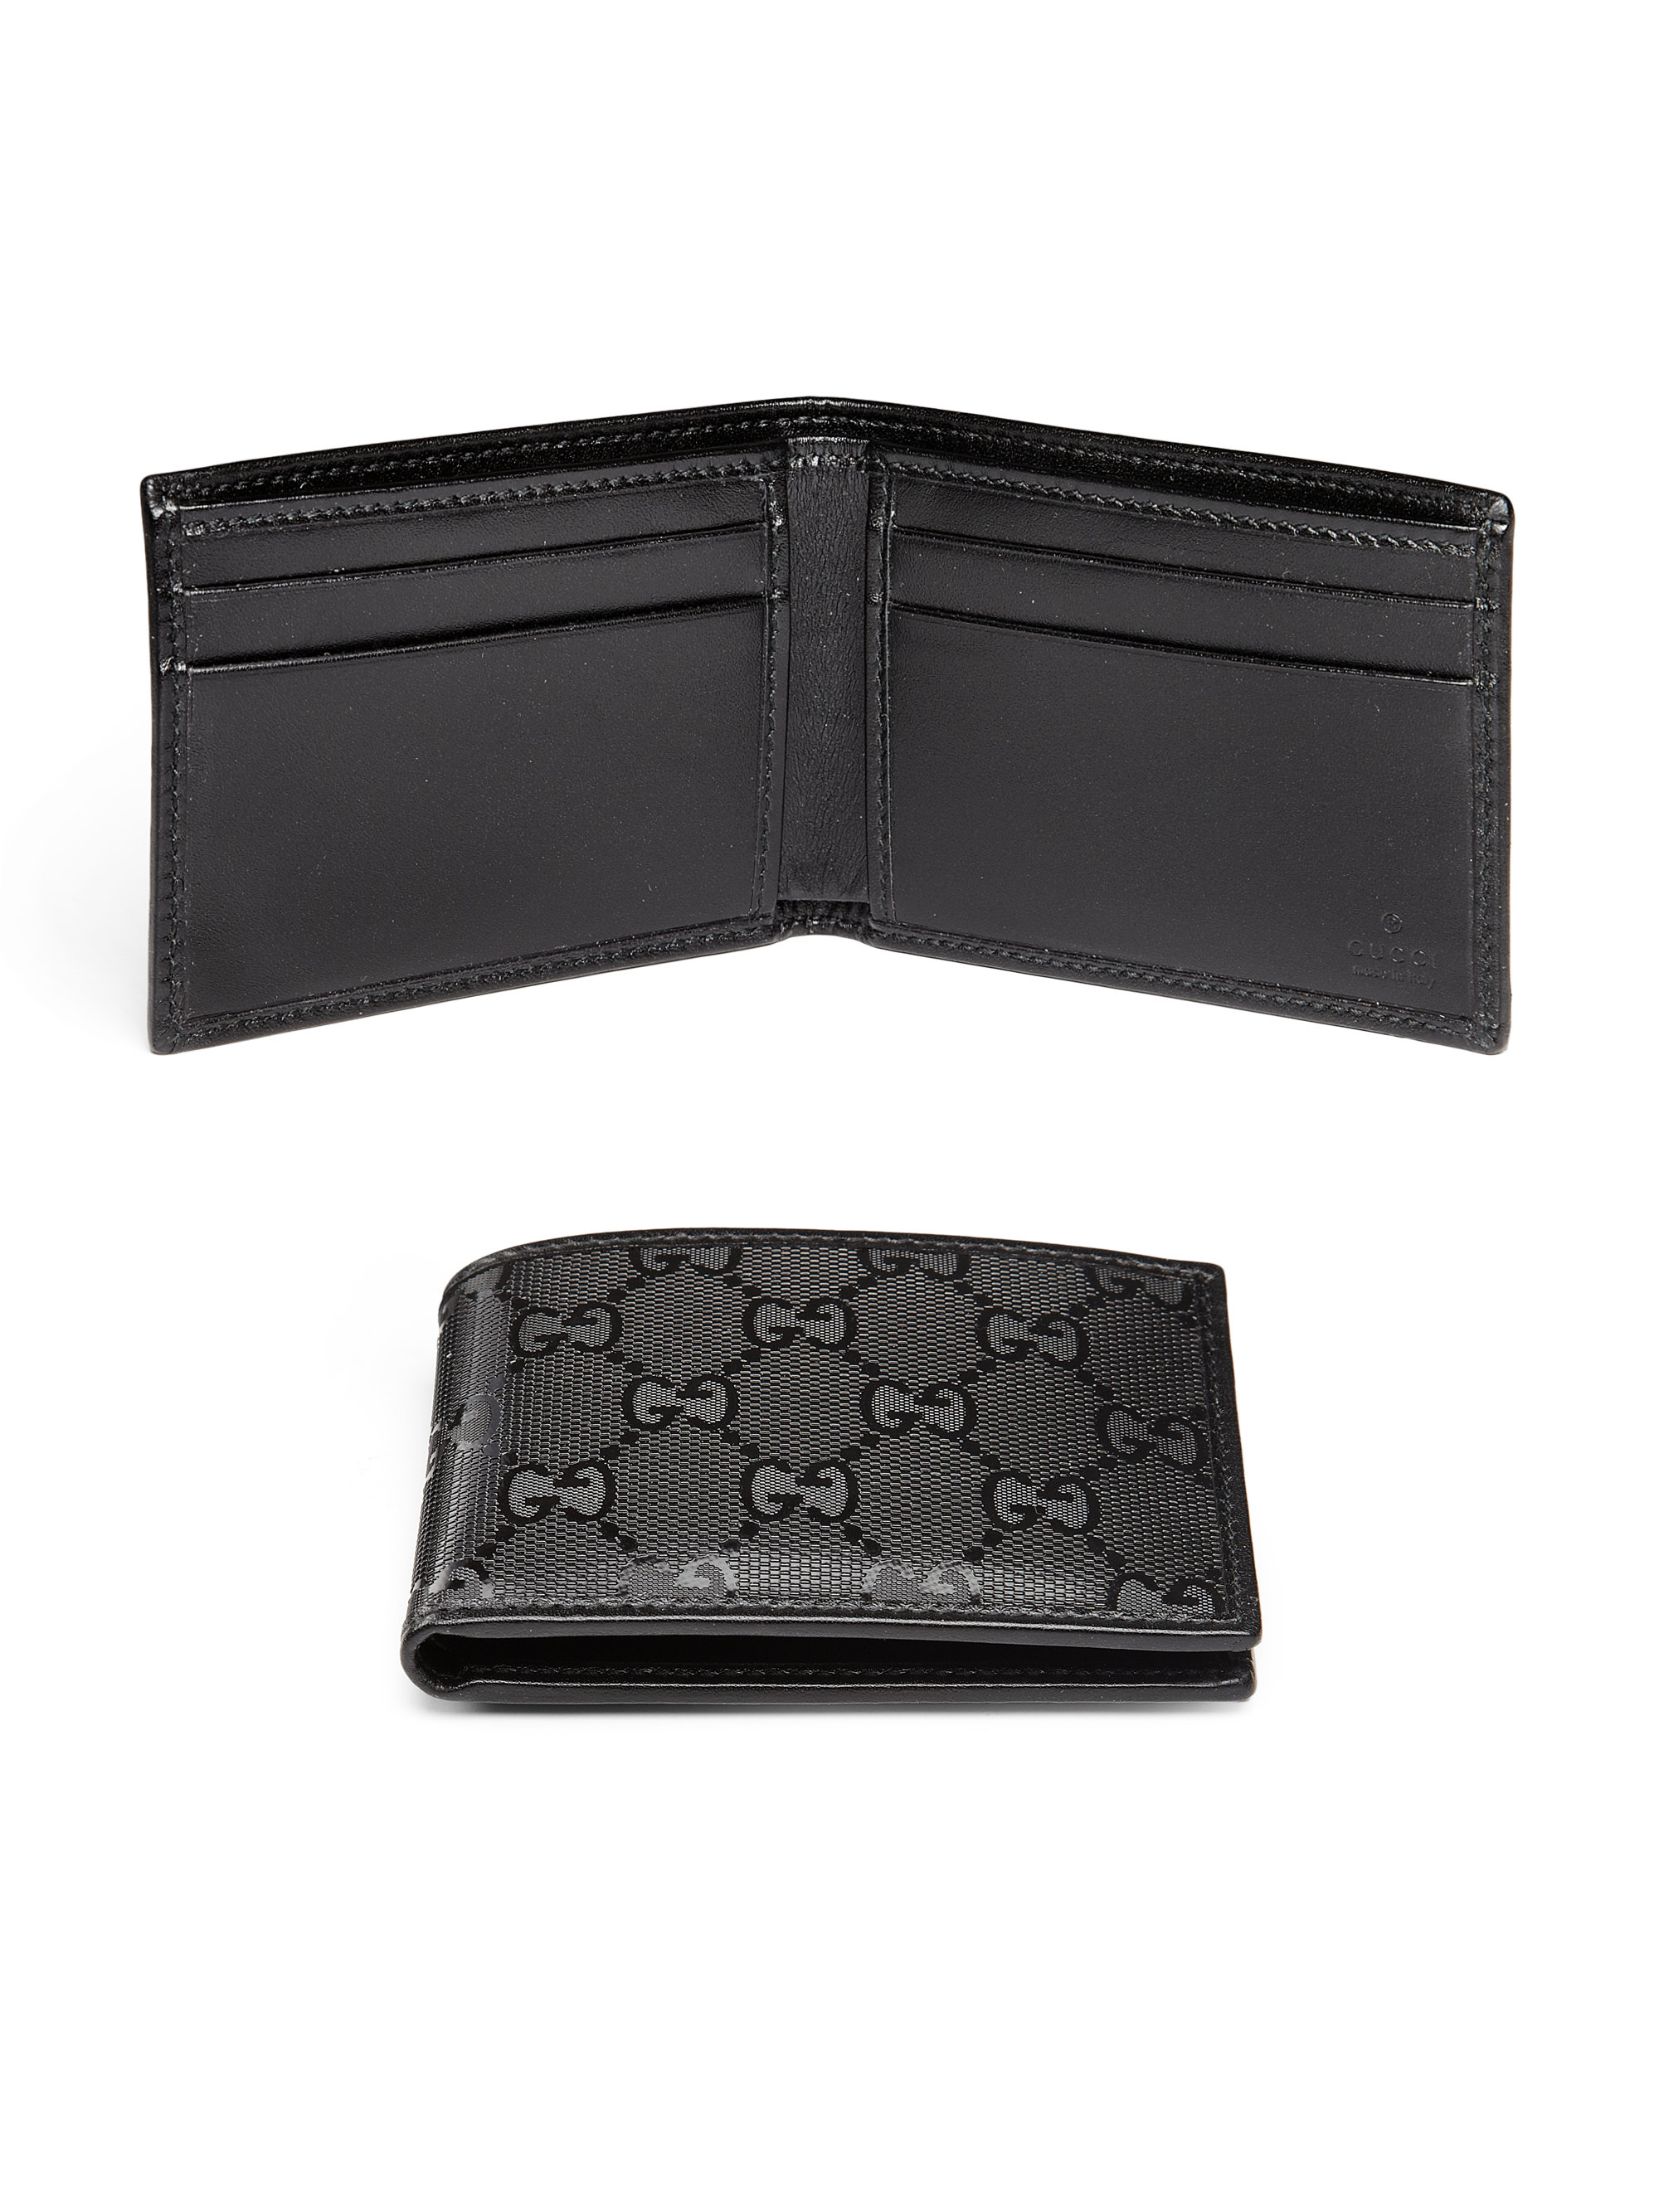 Lyst - Gucci Gg Imprime Wallet in Black for Men